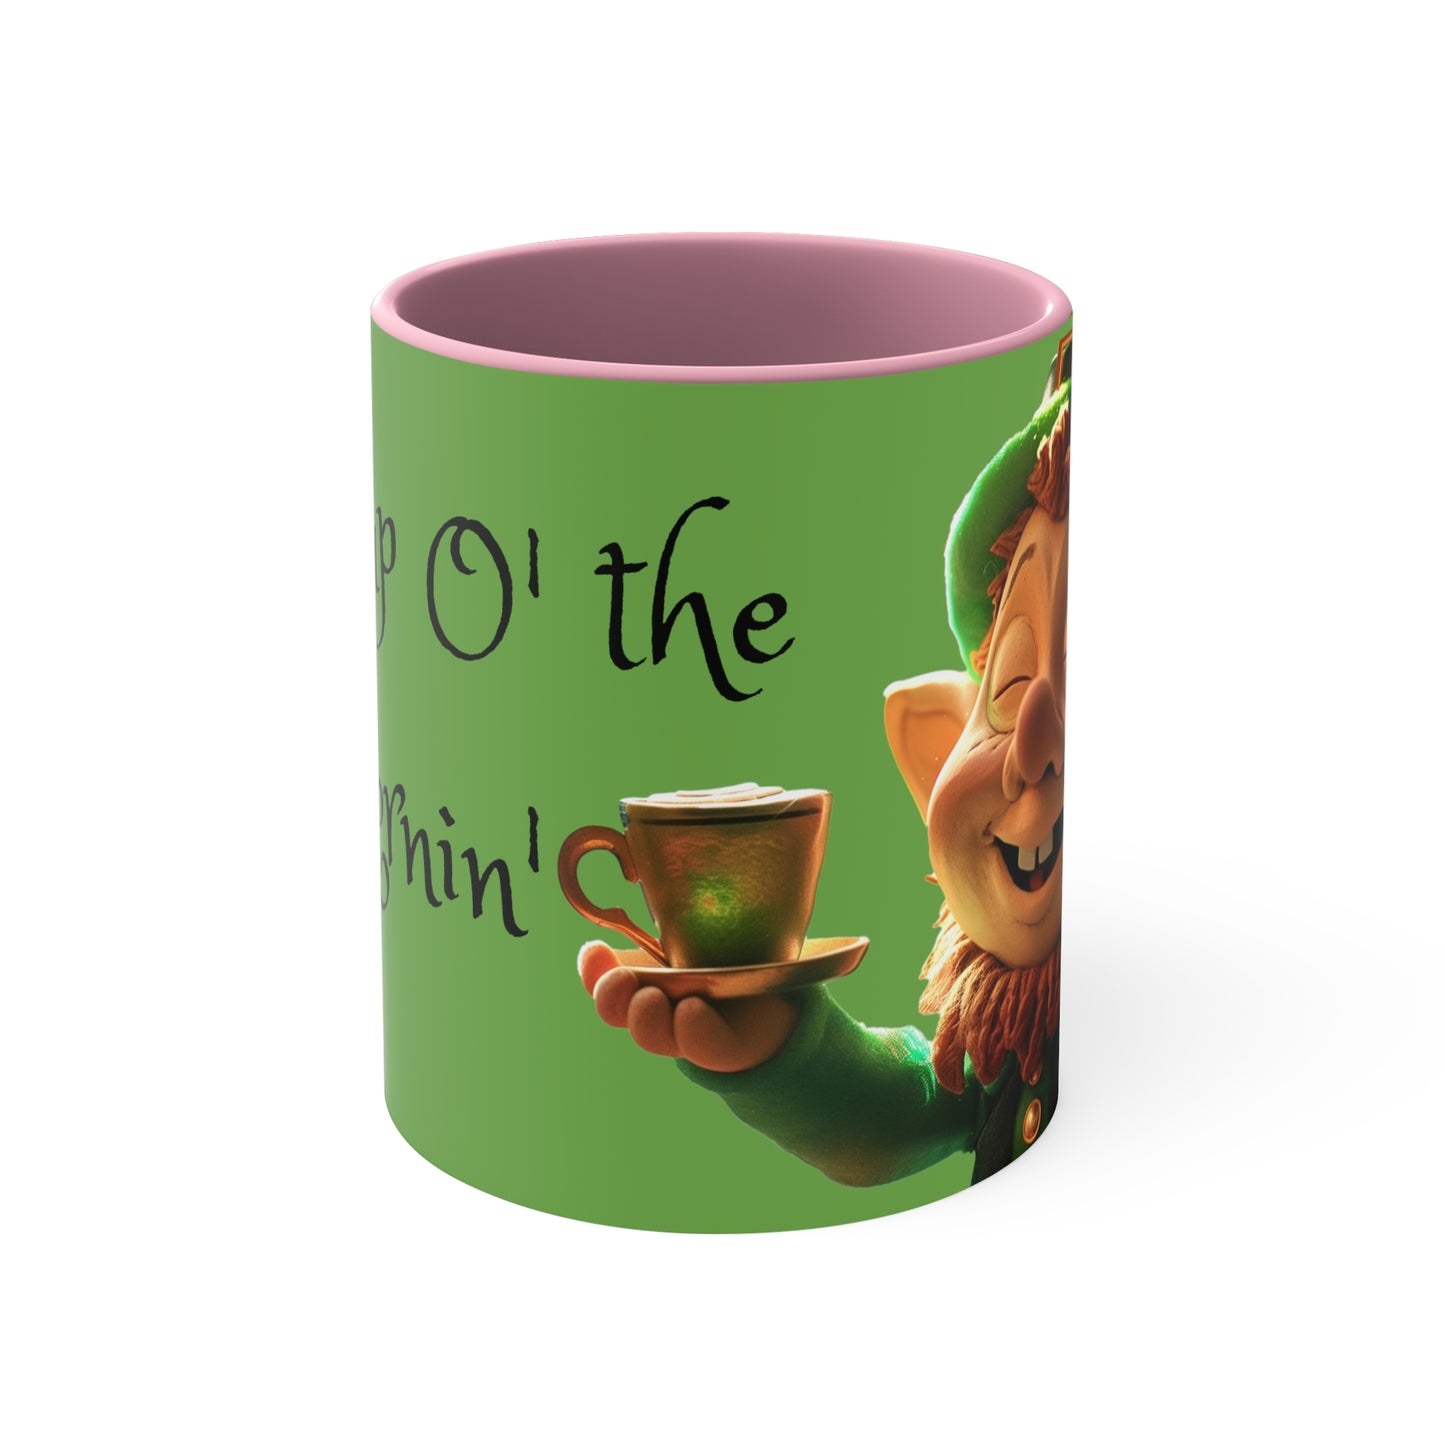 Cup O' The Mornin' Green